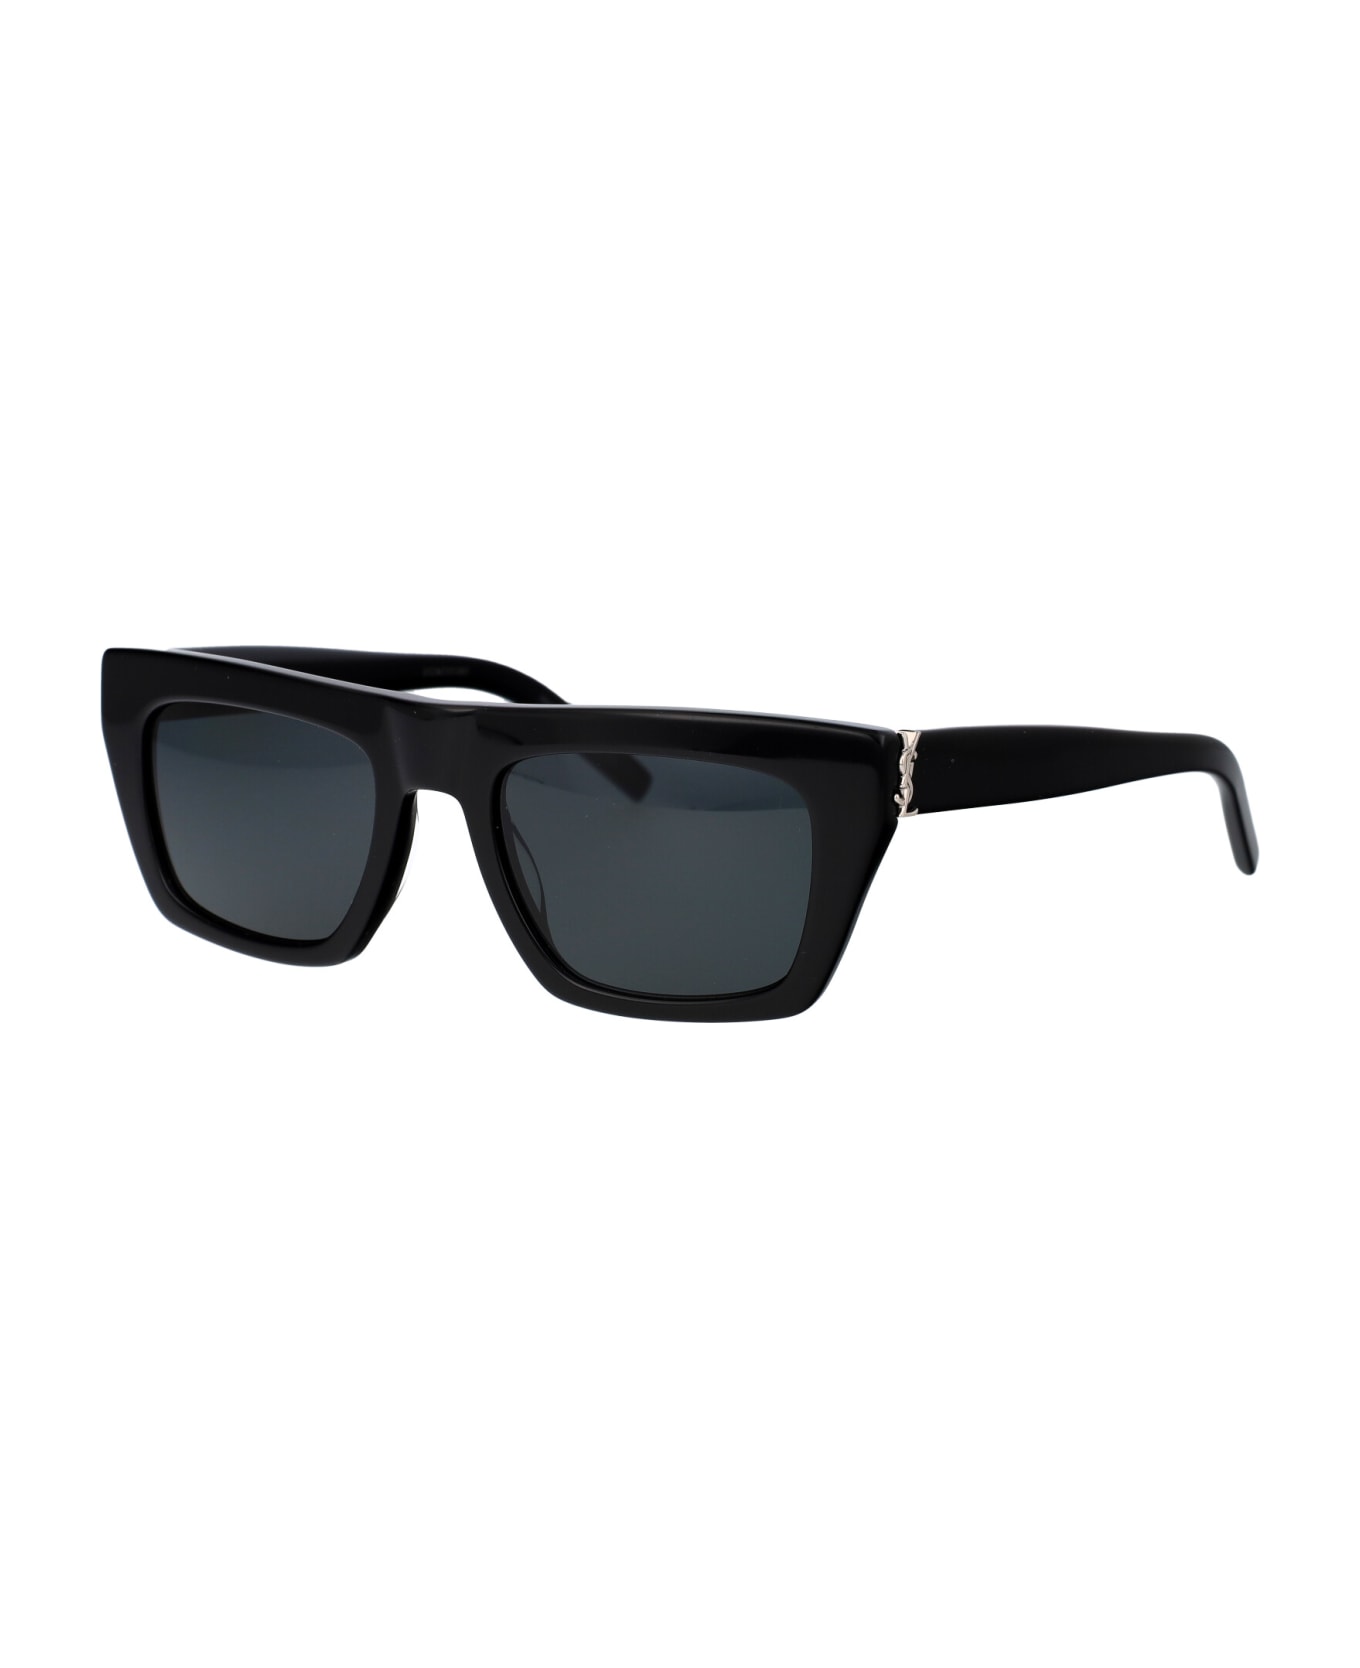 Saint Laurent Eyewear Sl M131 Sunglasses - 001 BLACK BLACK BLACK